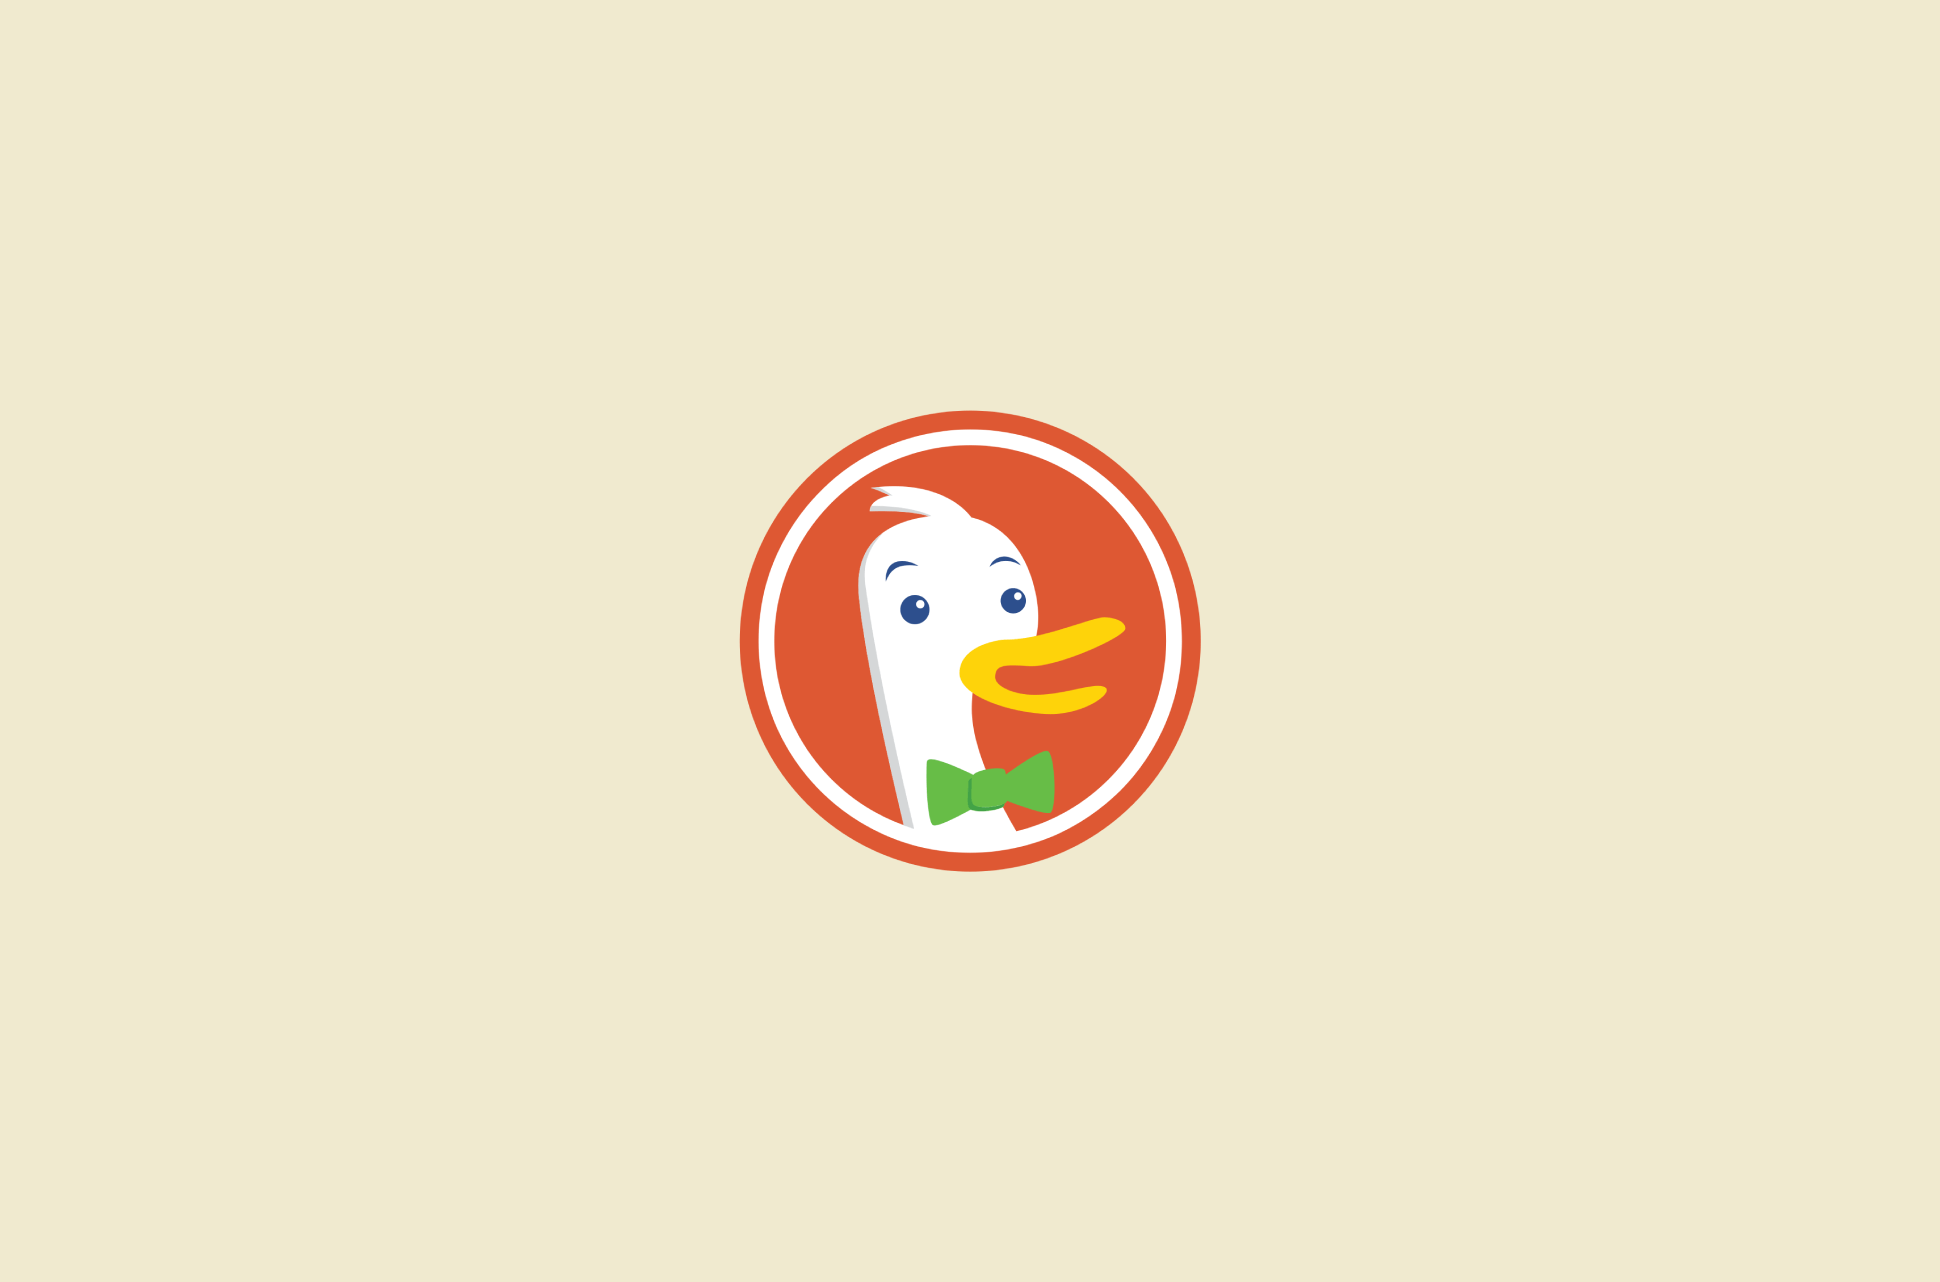 DuckDuckGo logo.